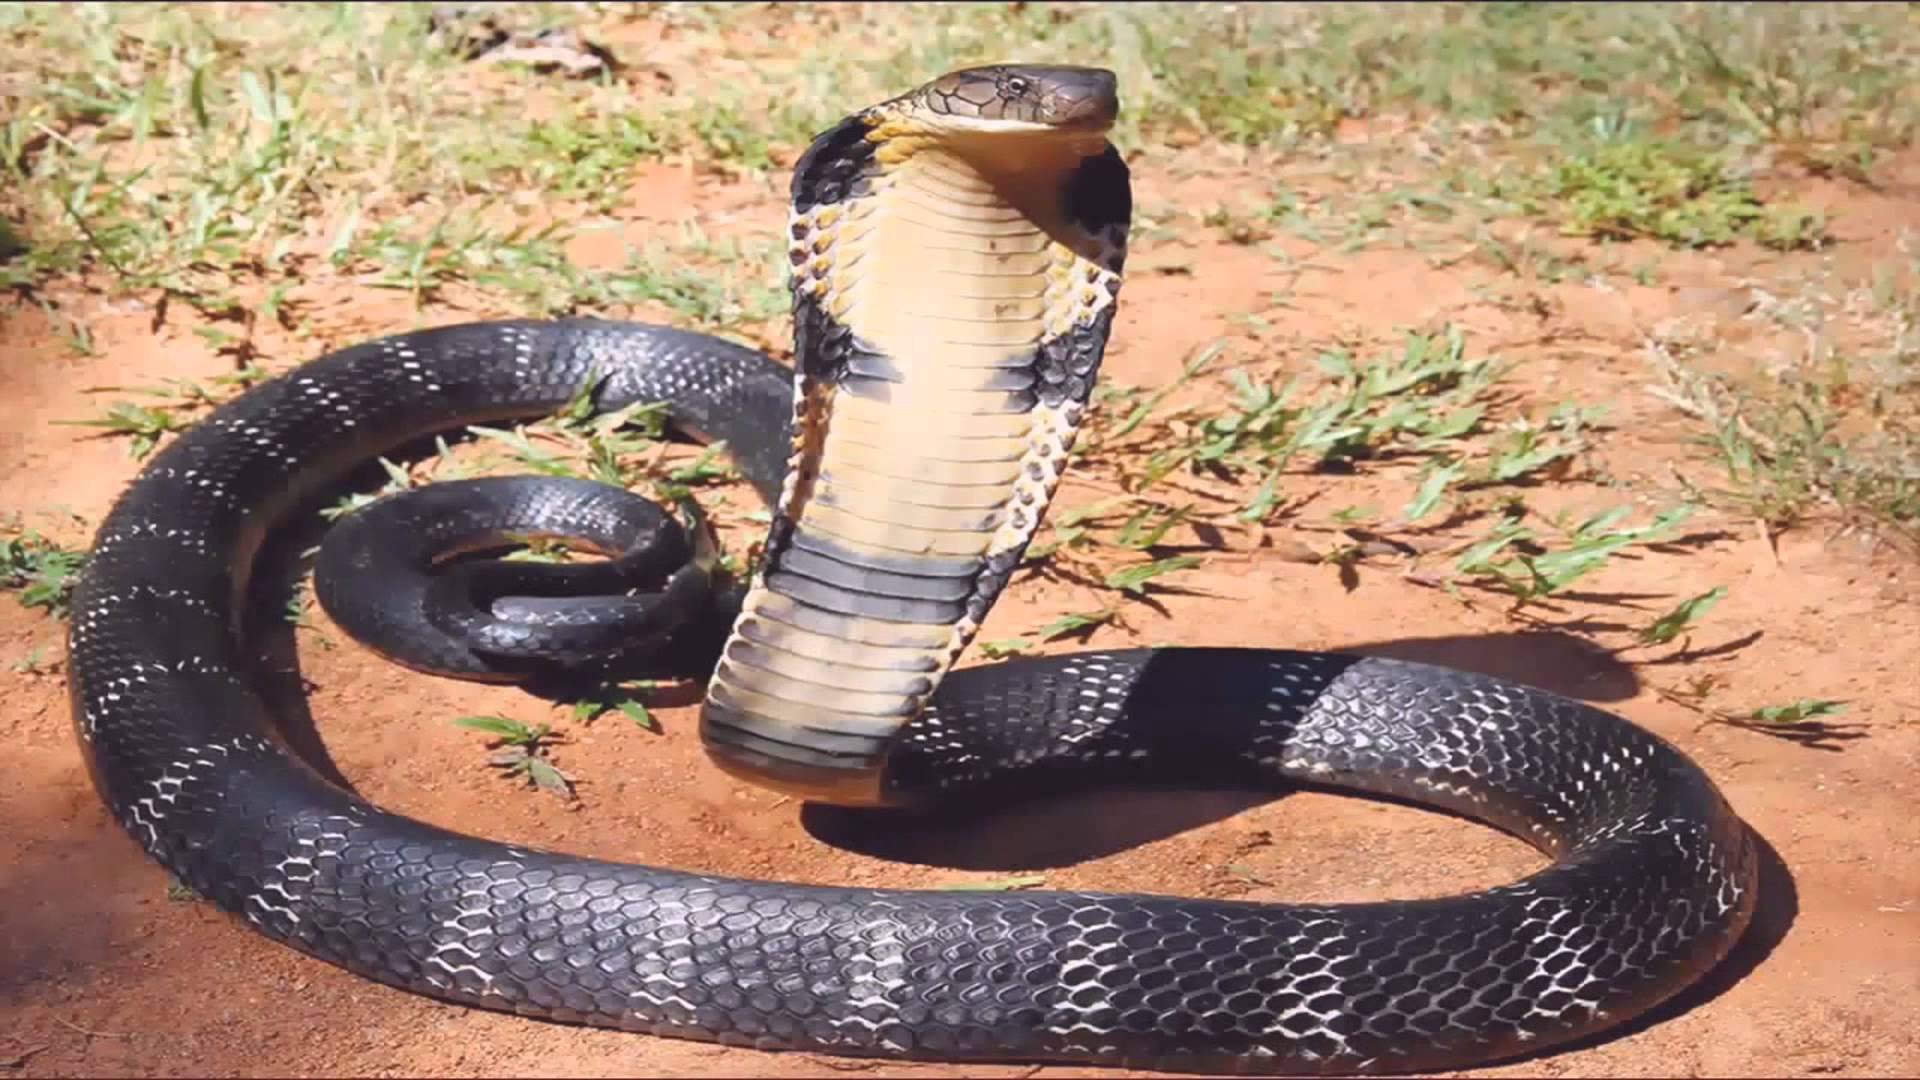 King cobra attack man vs King Cobra